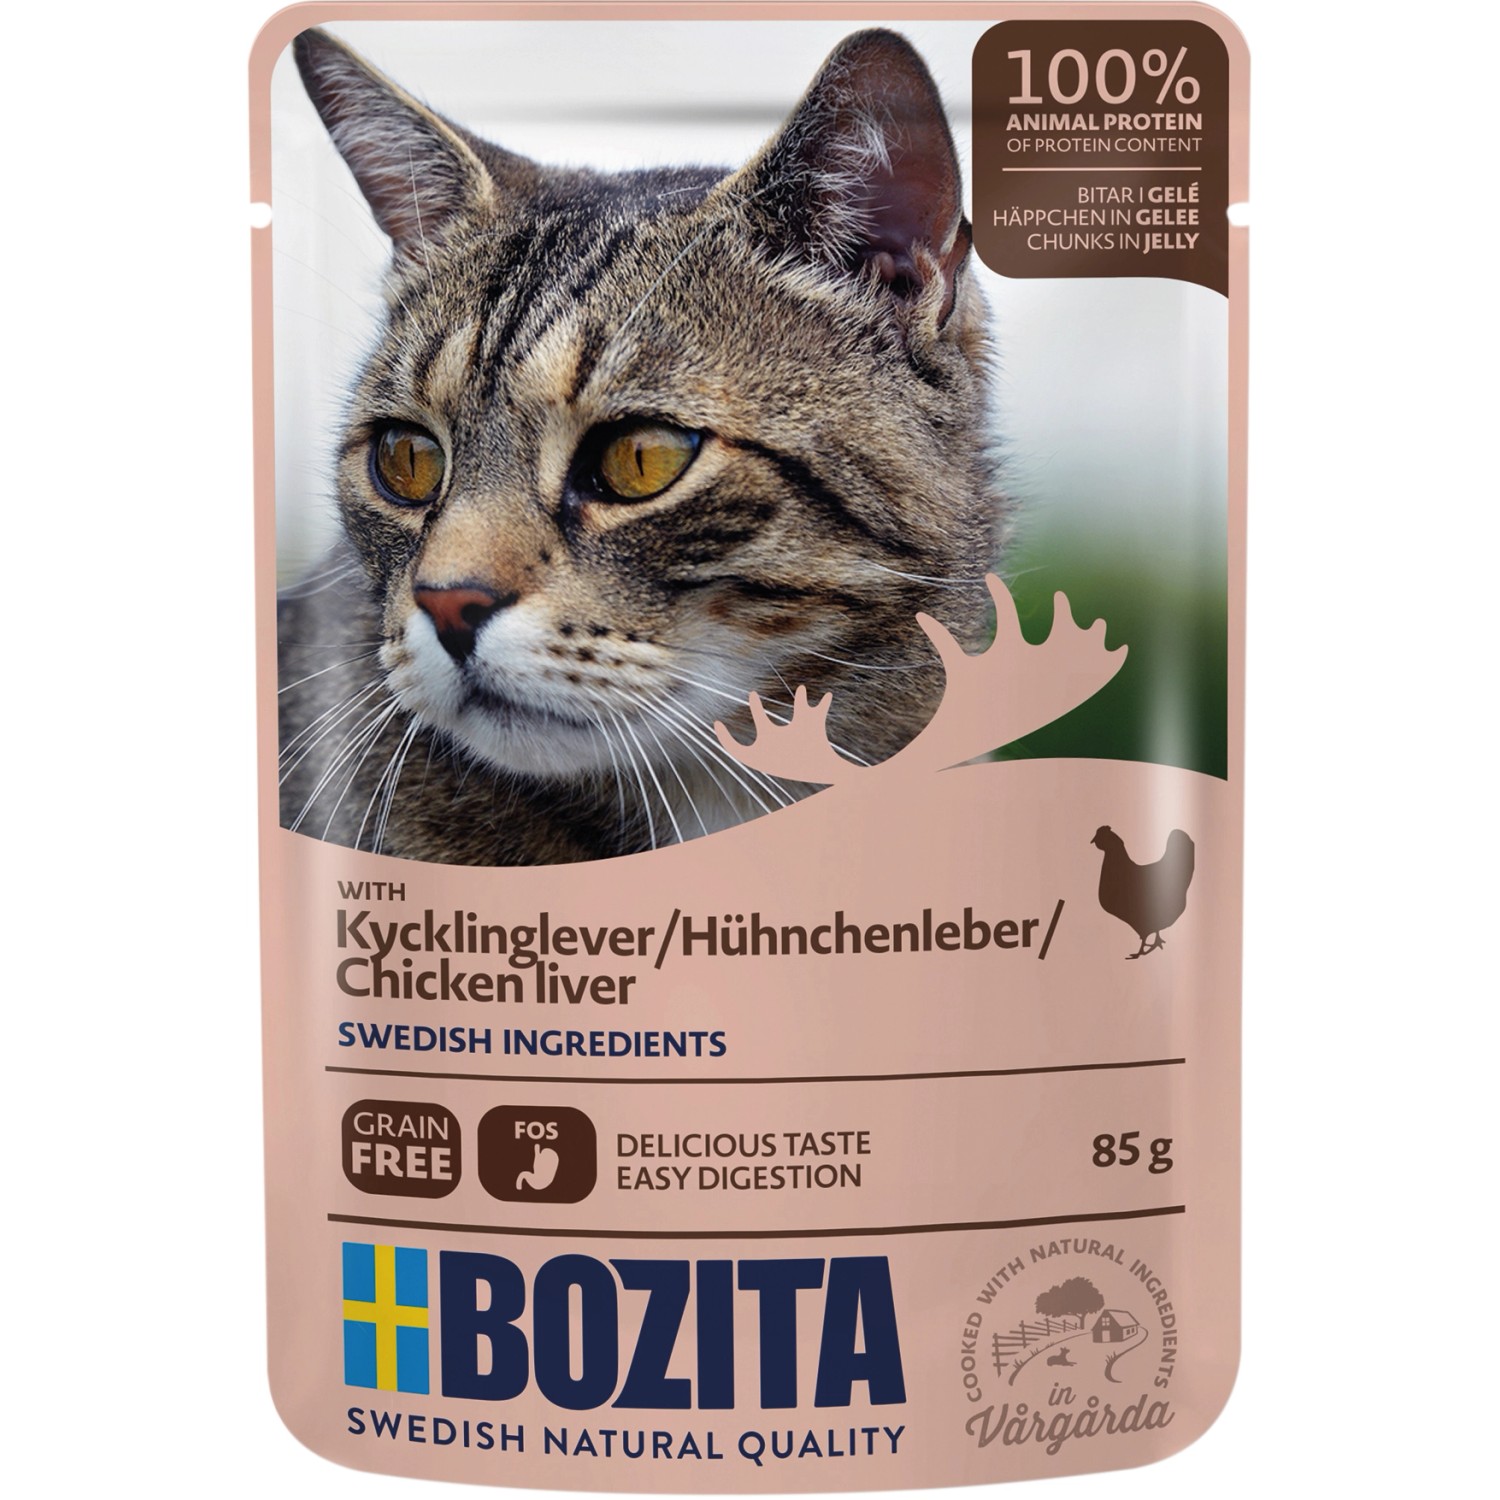 Bozita Katzen-Nassfutter Hühnchenleber Häppchen in Gelee 85 g